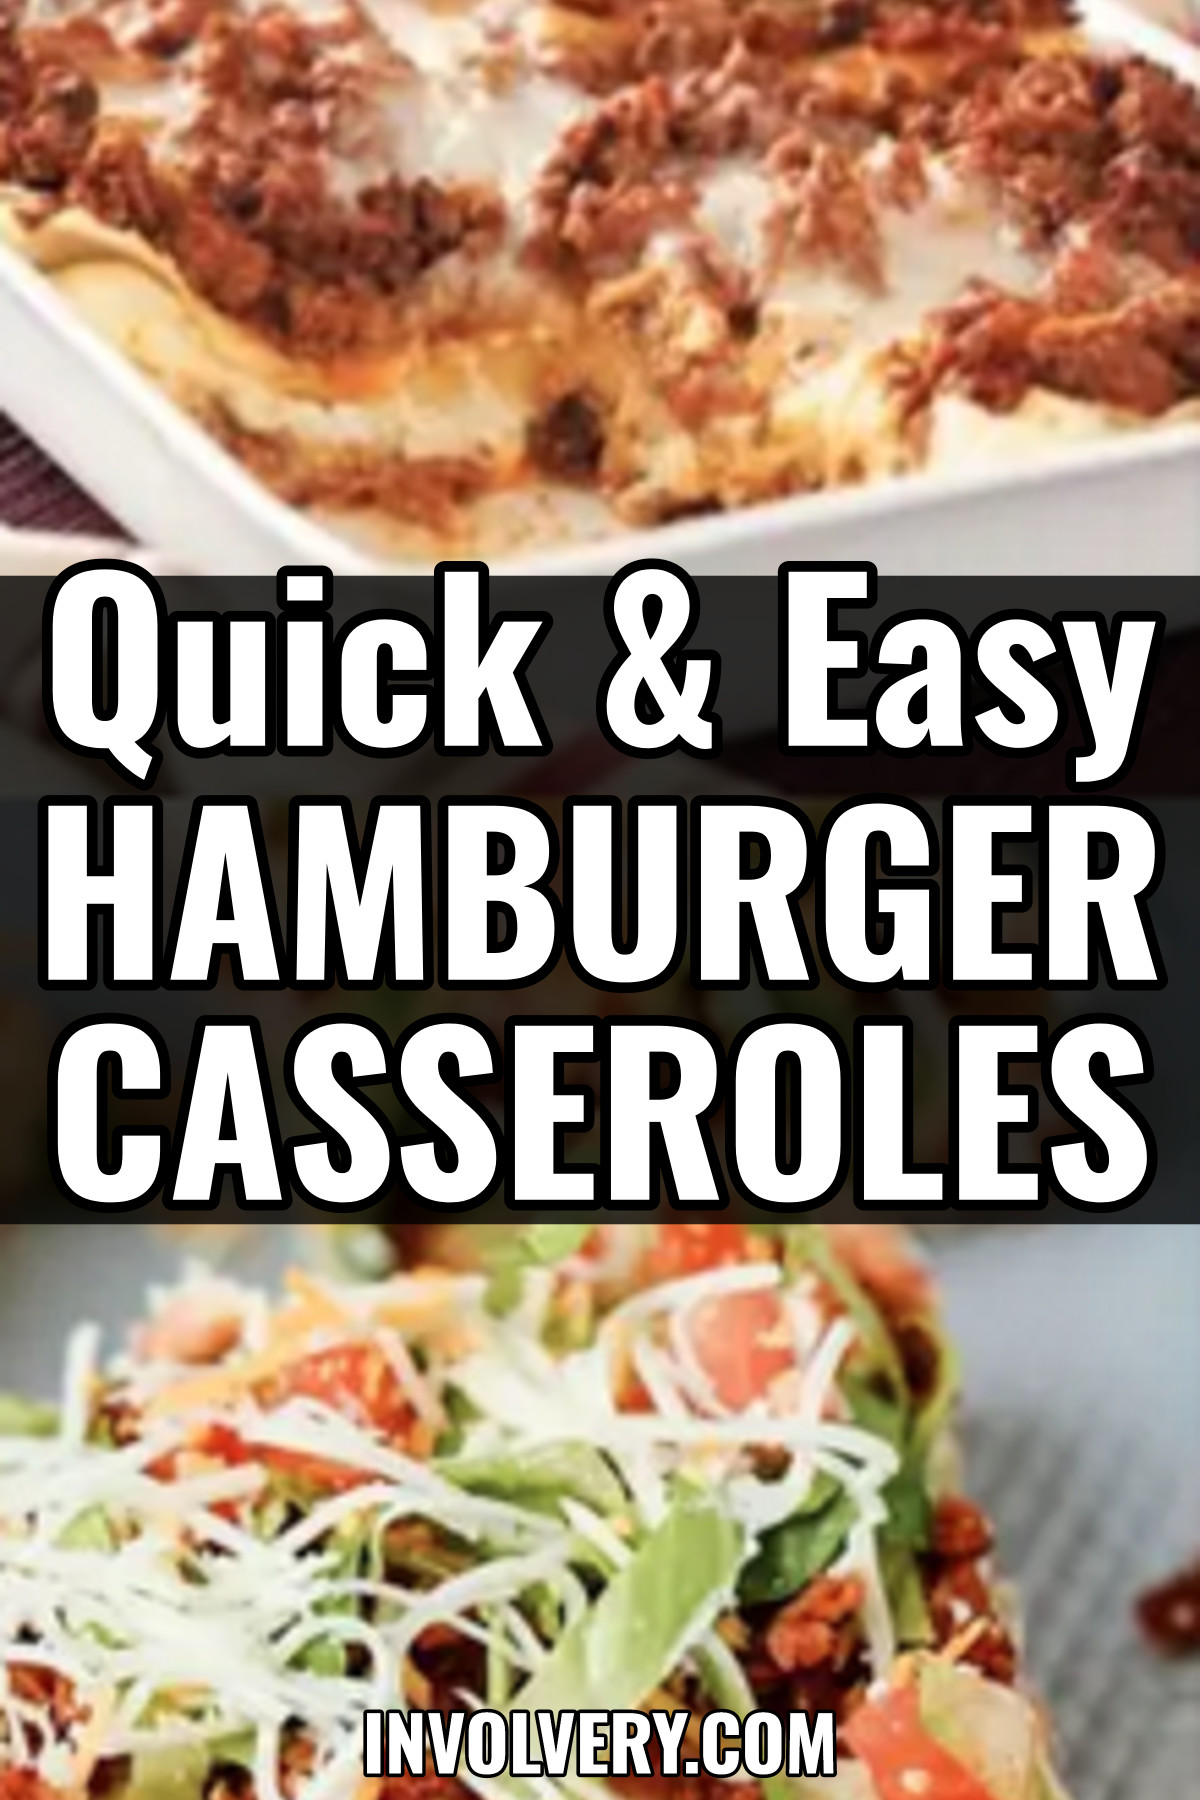 Quick & Easy Hamburger Casseroles